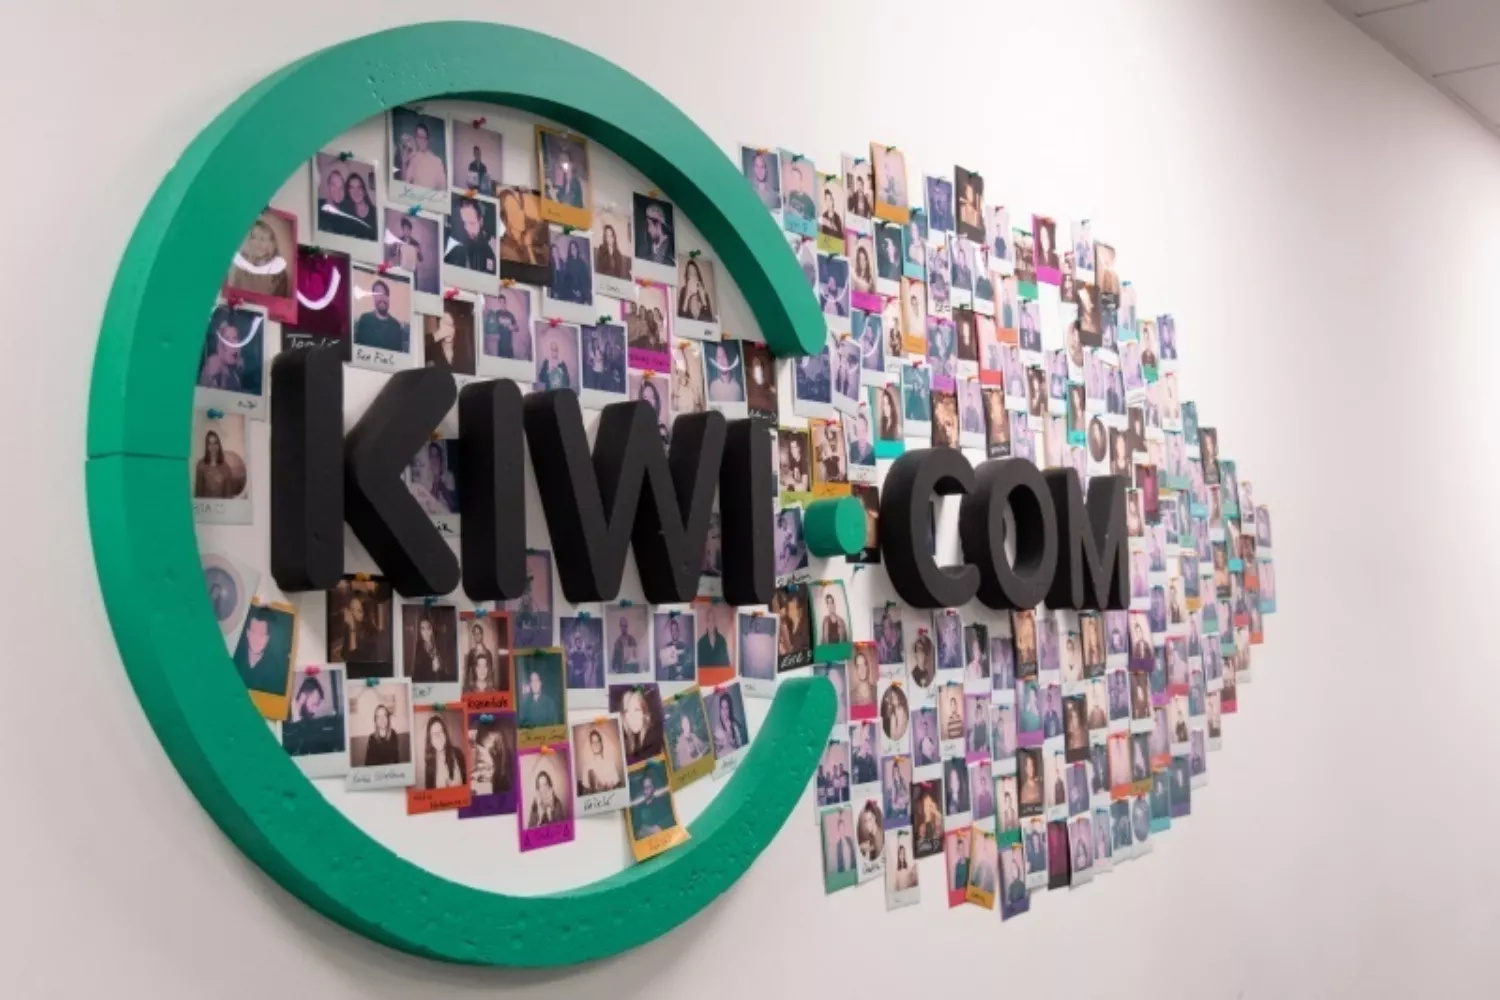 Logo de Kiwi.com / KIWI.COM